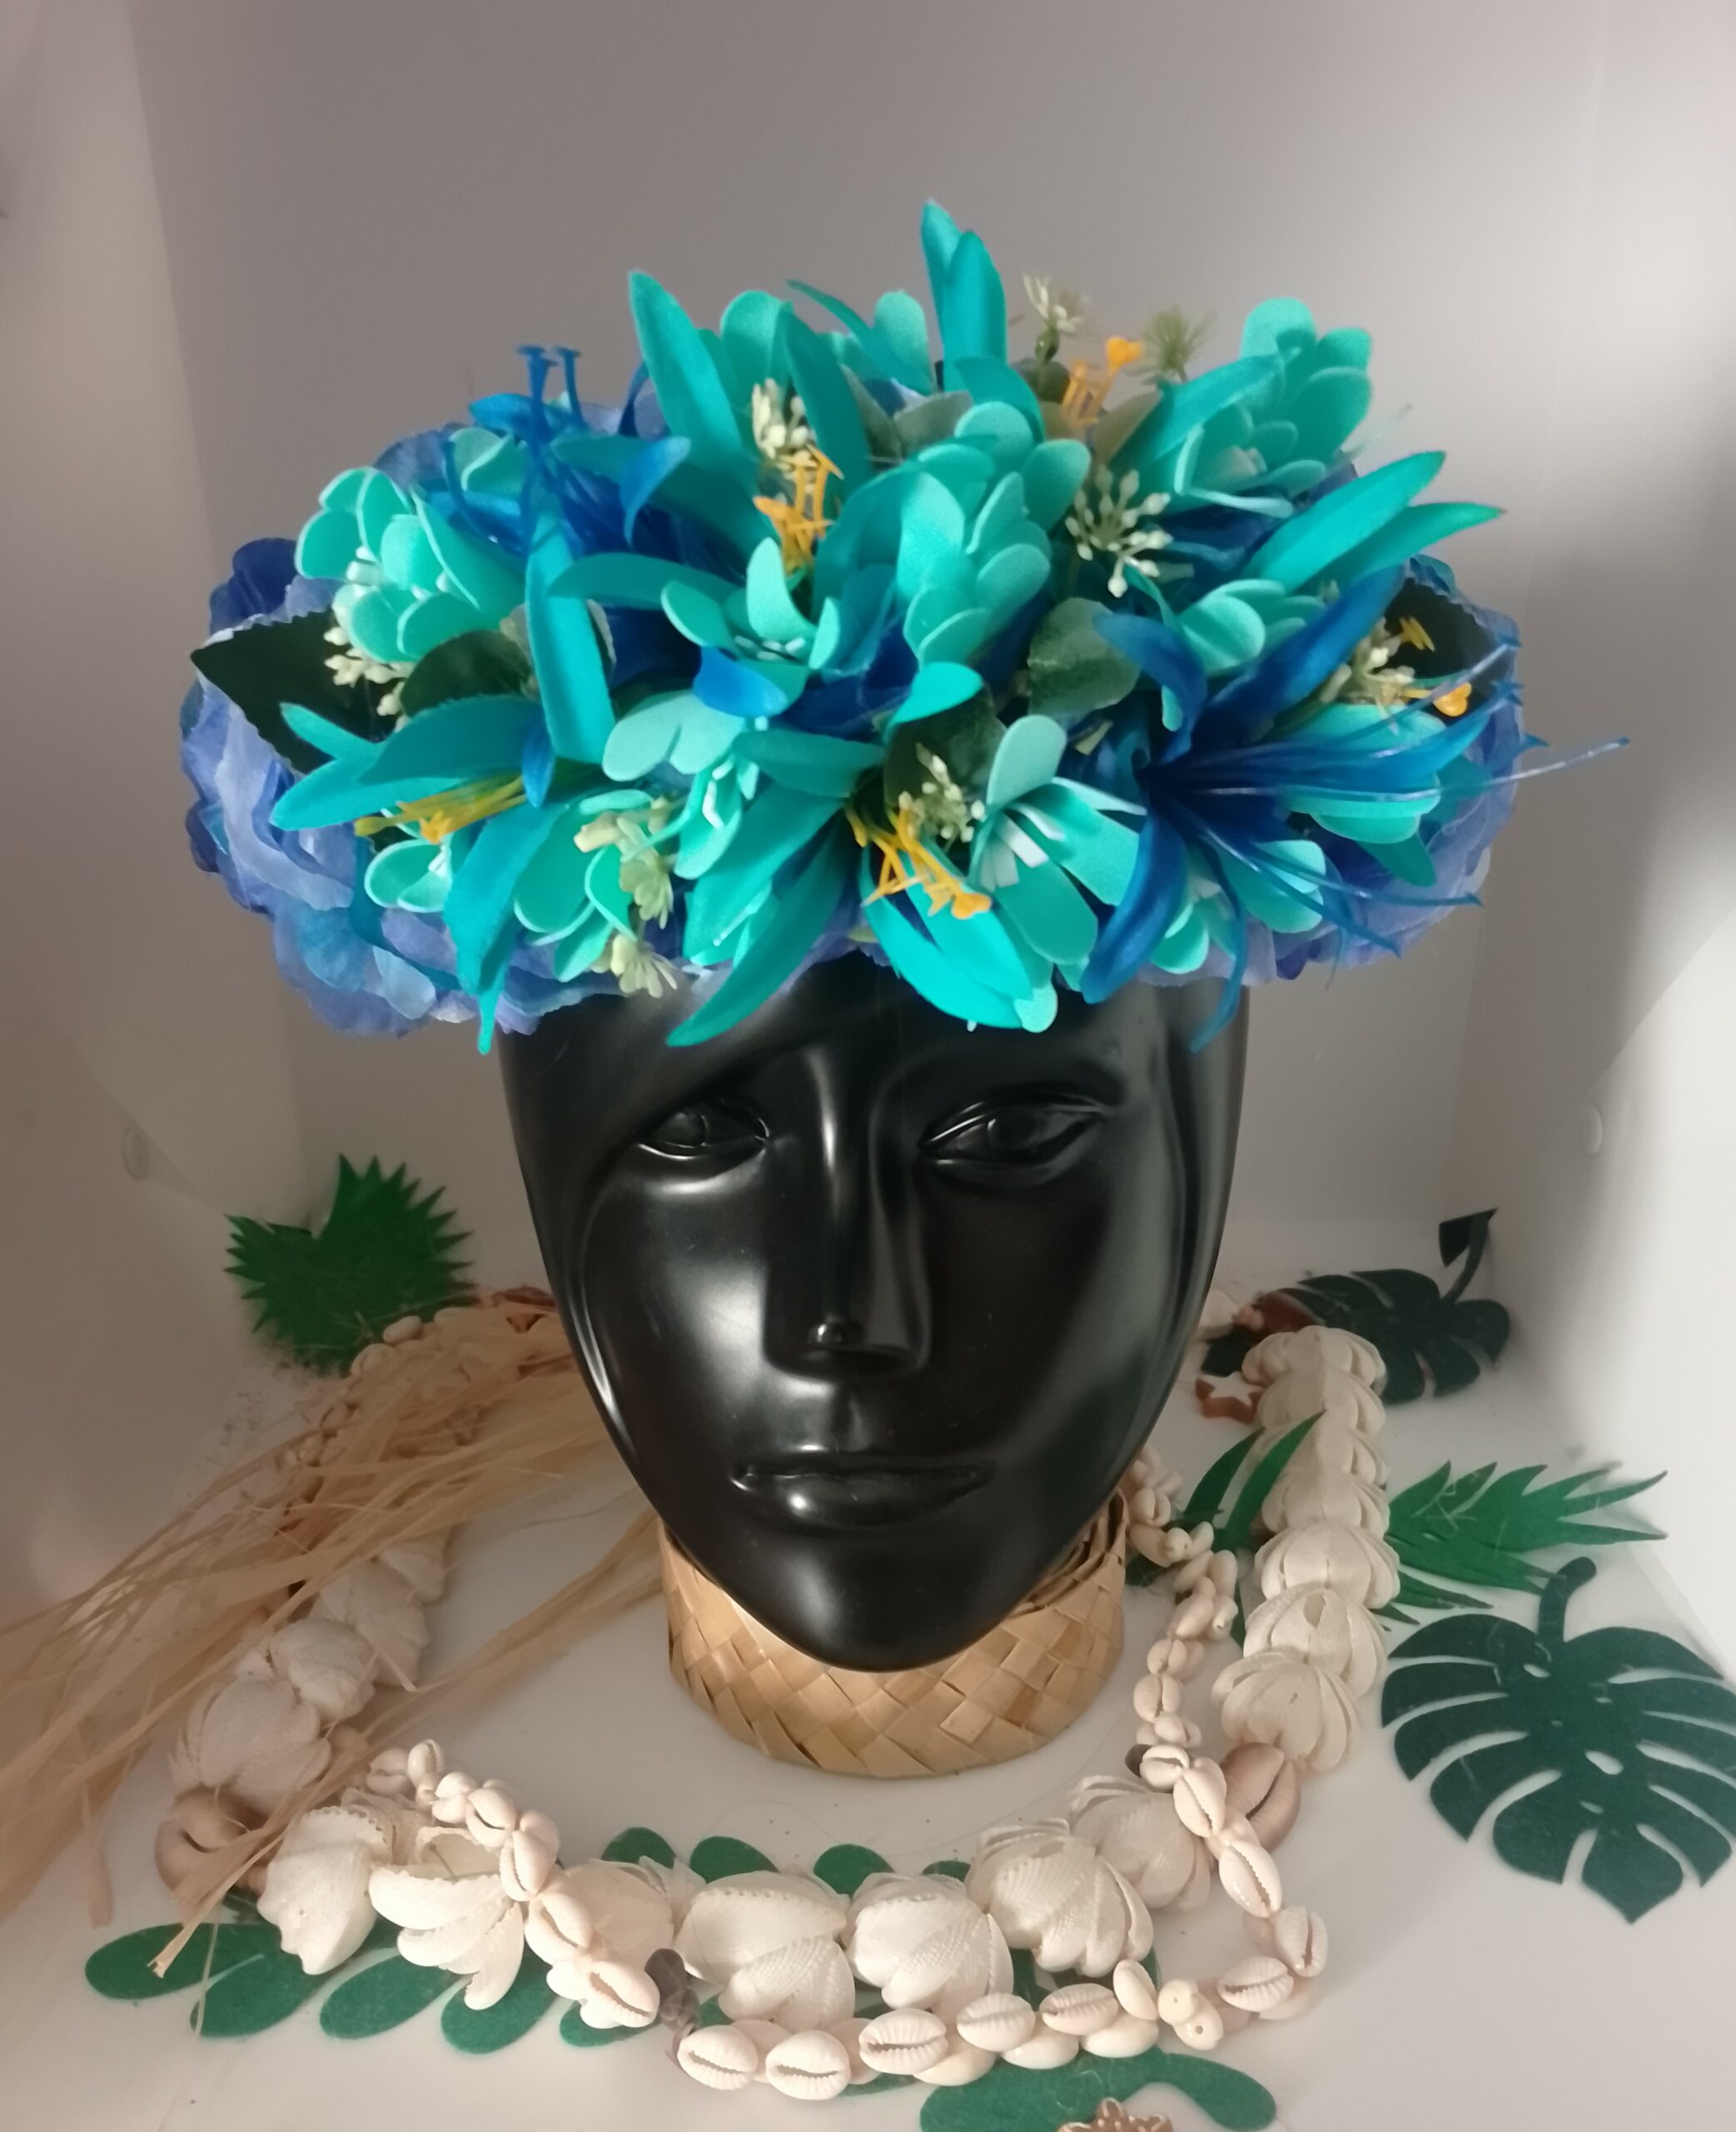 couronne de fleurs bleue avec lys élancés bleu lagon et bleu marin by Vaite.e.Tiare créations